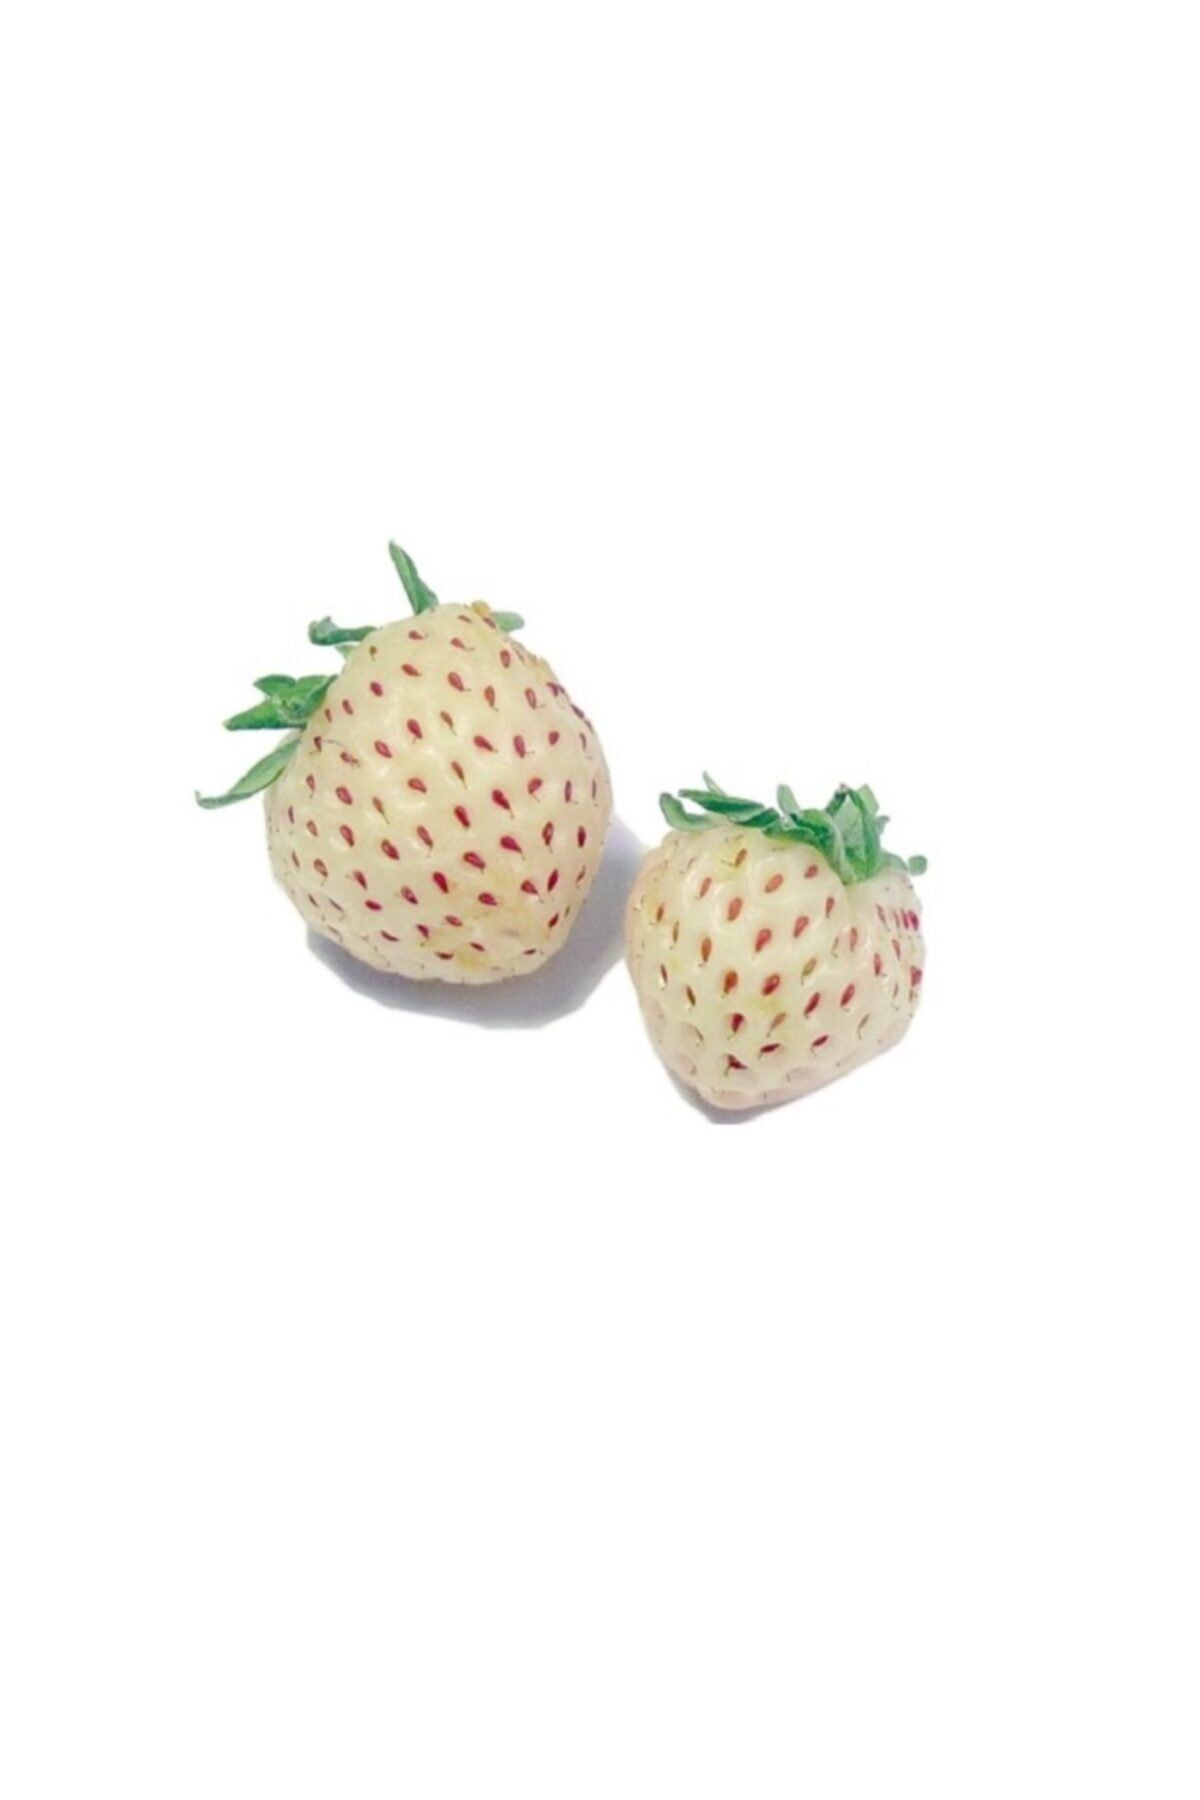 Fidanistanbul Çilek Fidesi Beyaz Çilek (pineberry), Askılı Saksıda